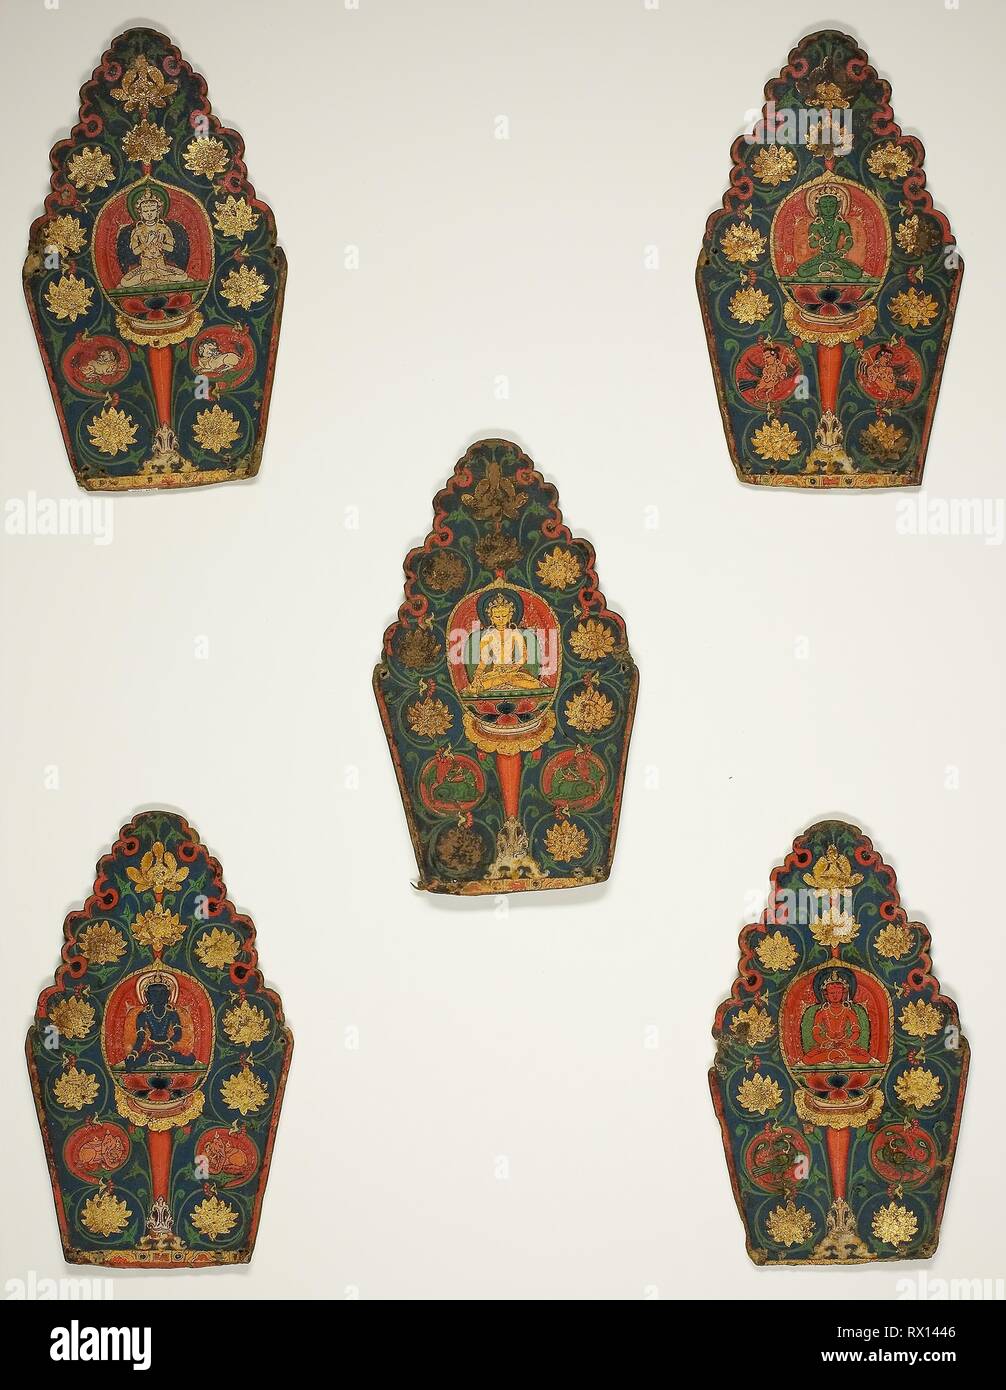 Cinq panneaux d'une couronne avec Vajrasattva Bouddhas transcendantale. Le Tibet. Date : 1399-1499. Dimensions : Chaque panneau 27 x 19,8 cm (10 5/8 x 7 13/16 in.). Encre et pigments, avec de l'or sur papier pressé. Origine : le Tibet. Musée : le Chicago Art Institute. Banque D'Images